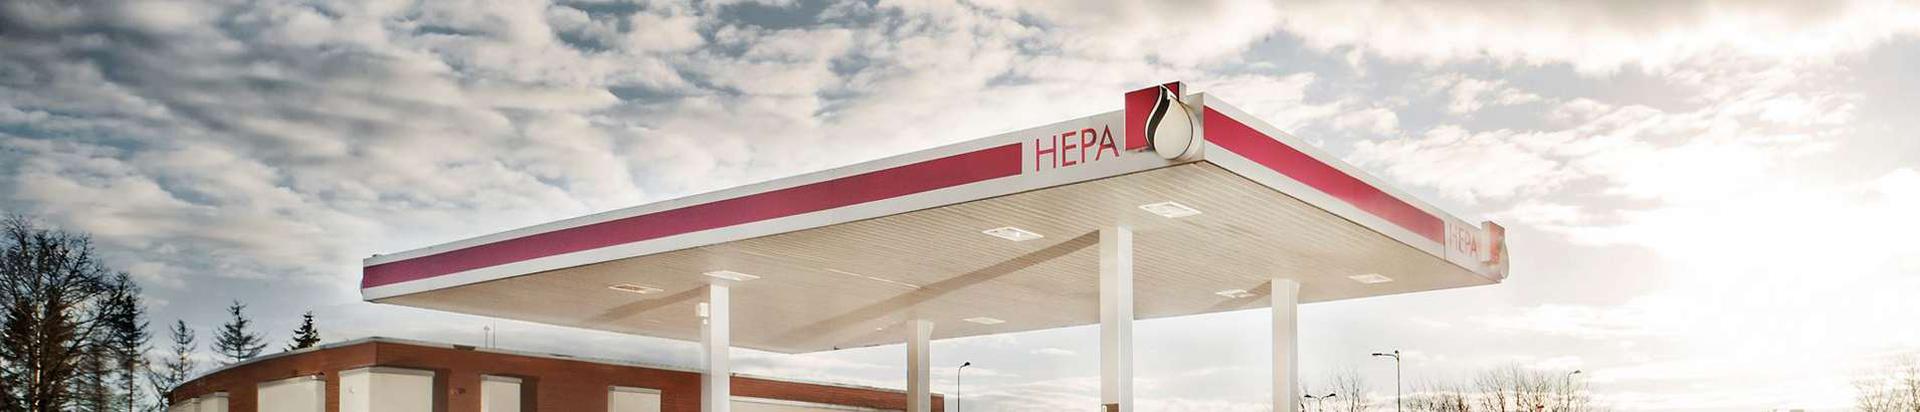 HEPA tanklad asuvad Raplamaal ja Pärnumaal.